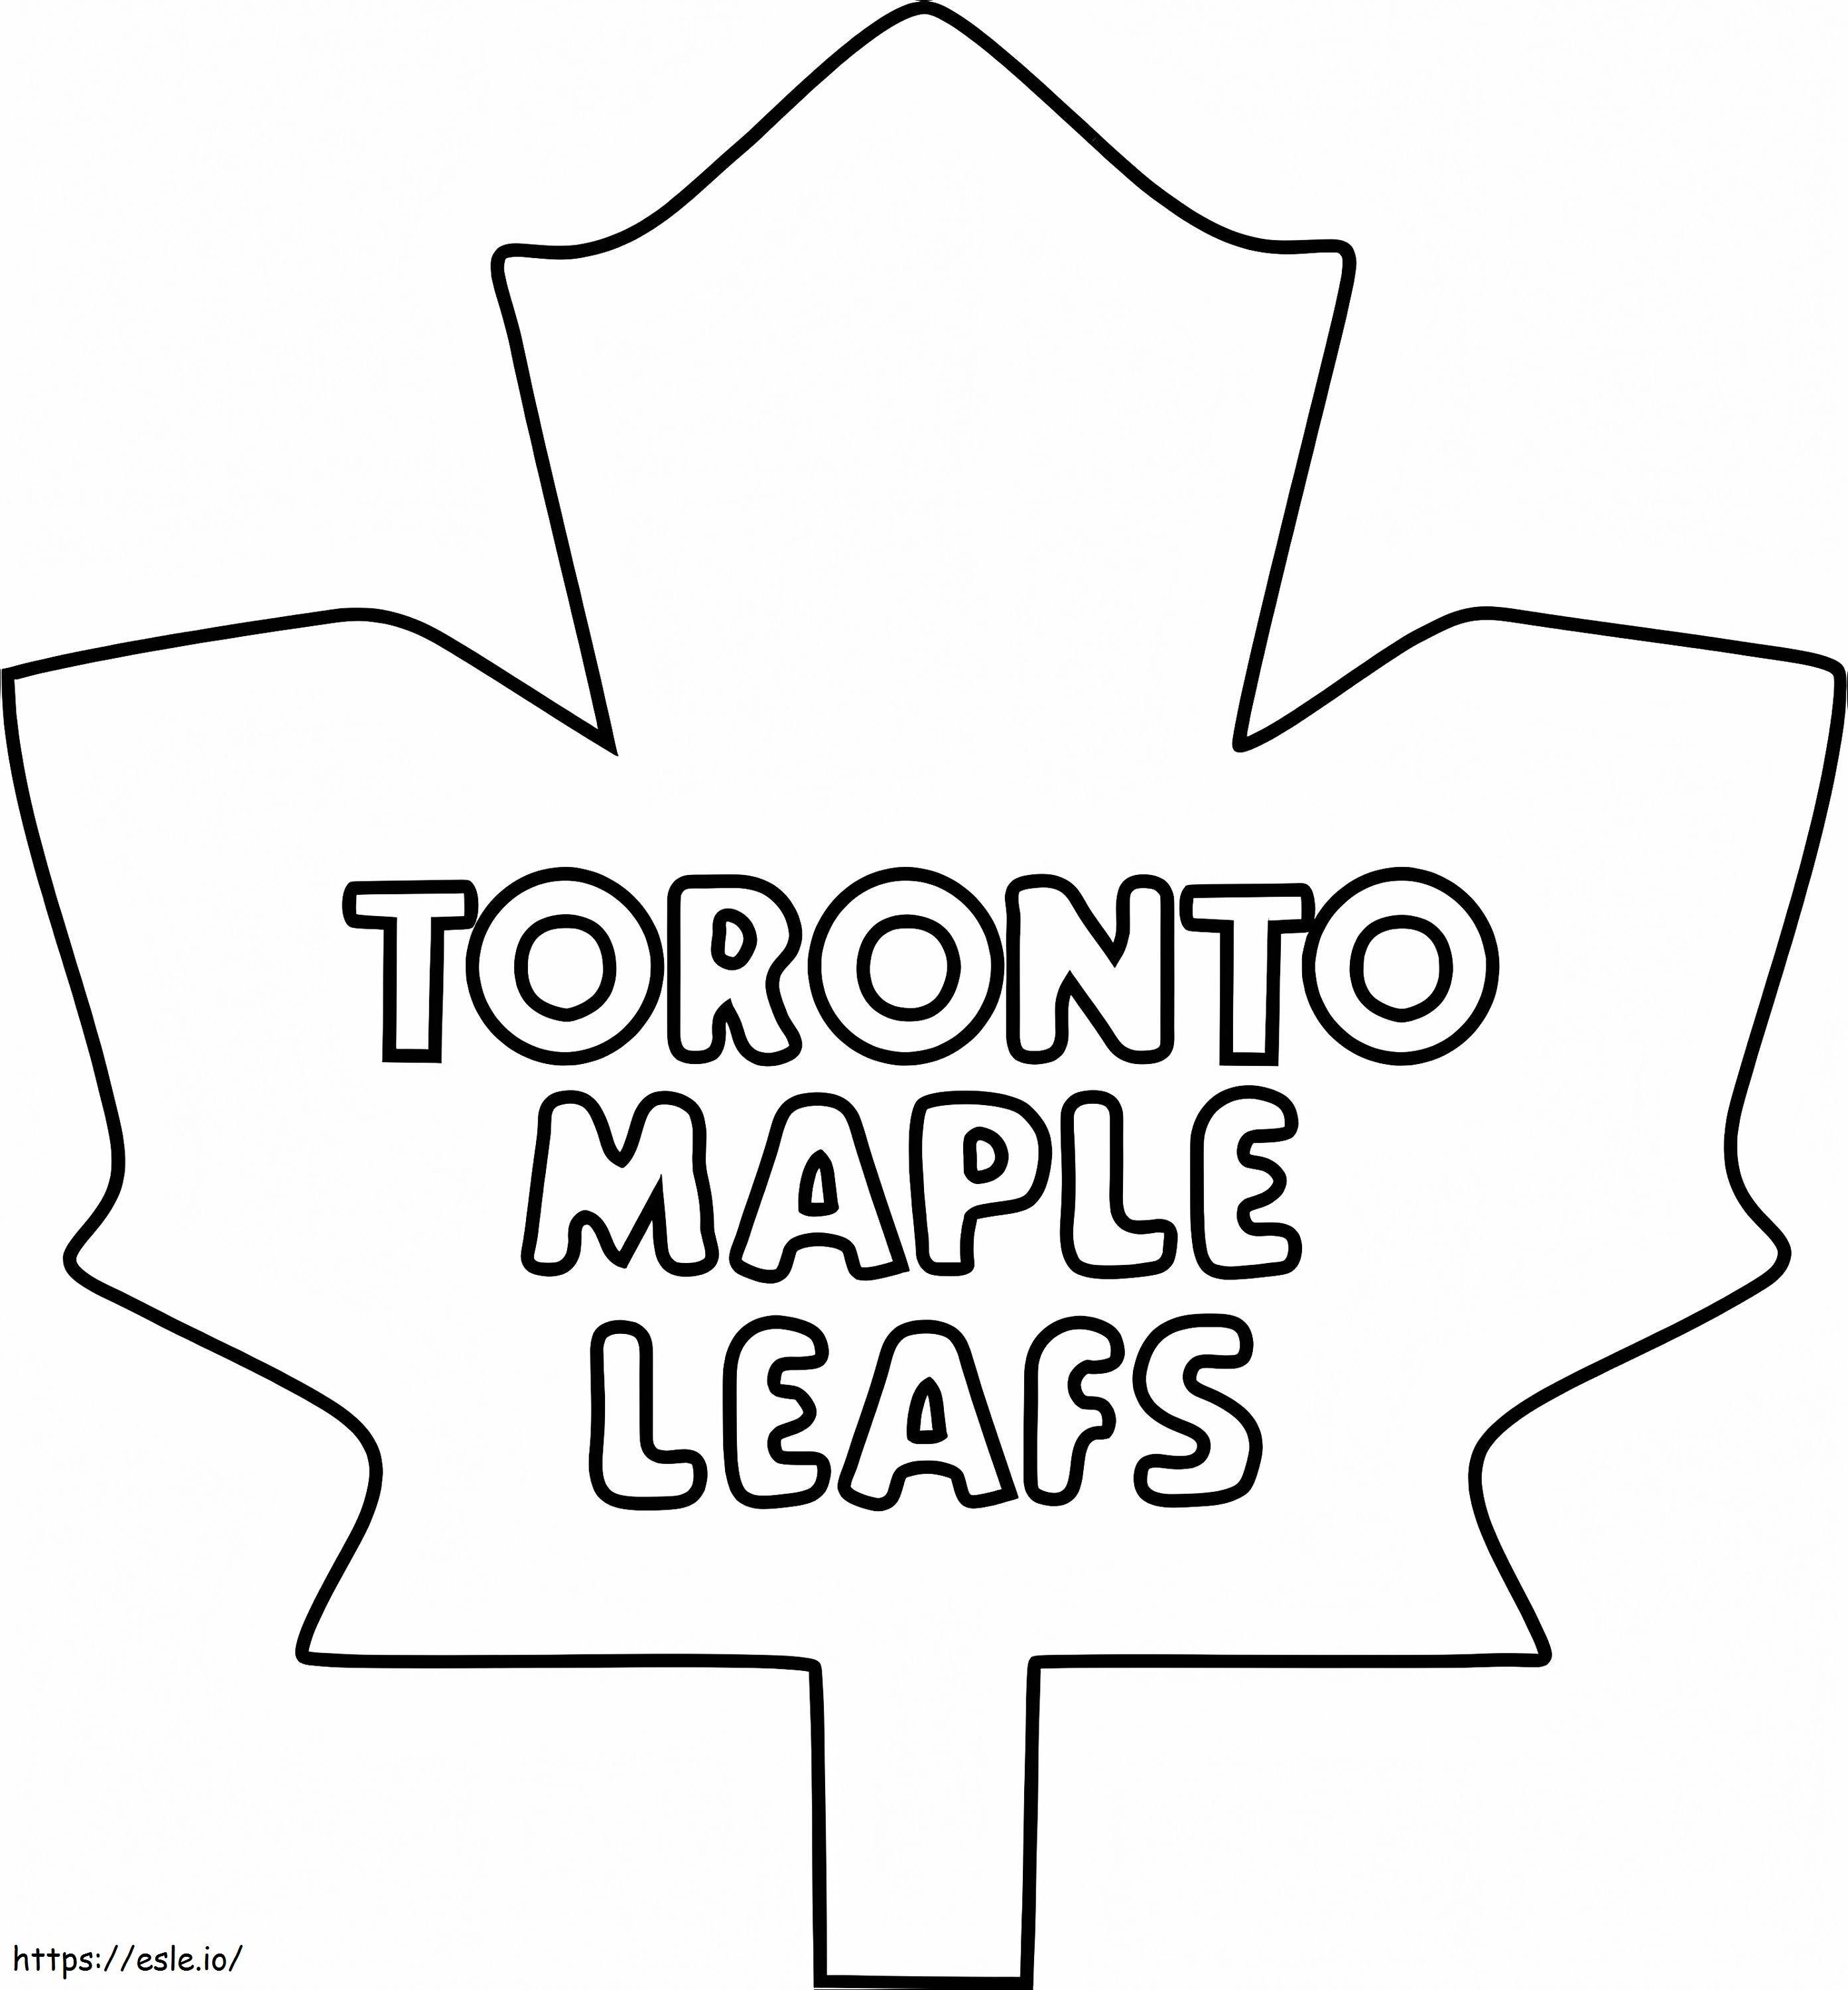 Logotipo de las hojas de arce de Toronto para colorear